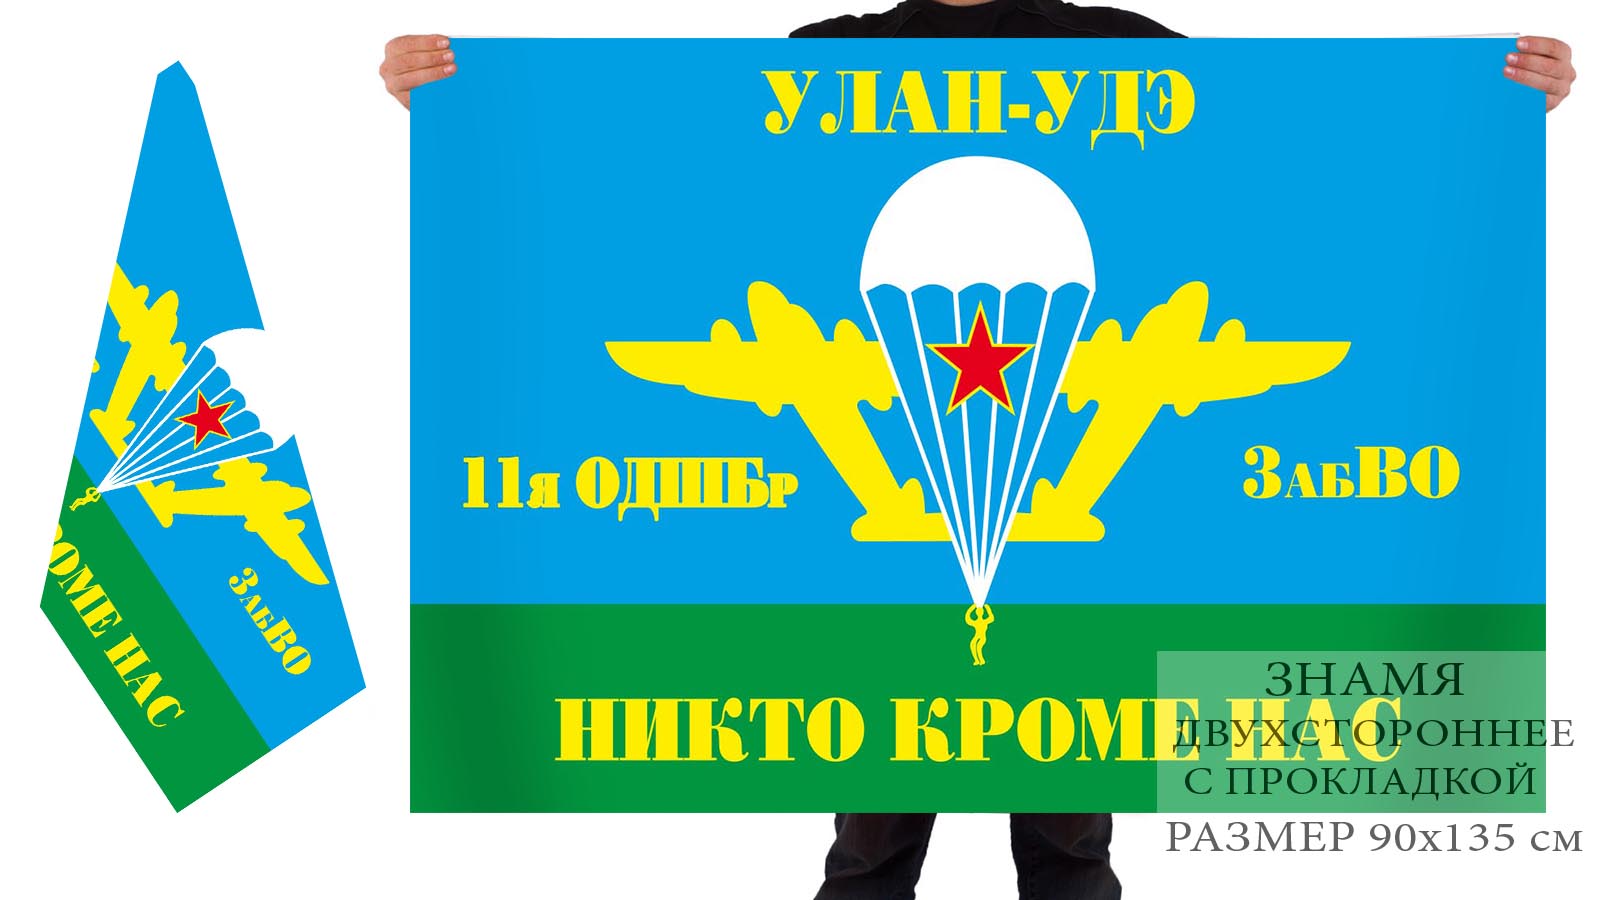 Двусторонний флаг 11 ОДШБр ВДВ с девизом "Никто кроме нас"